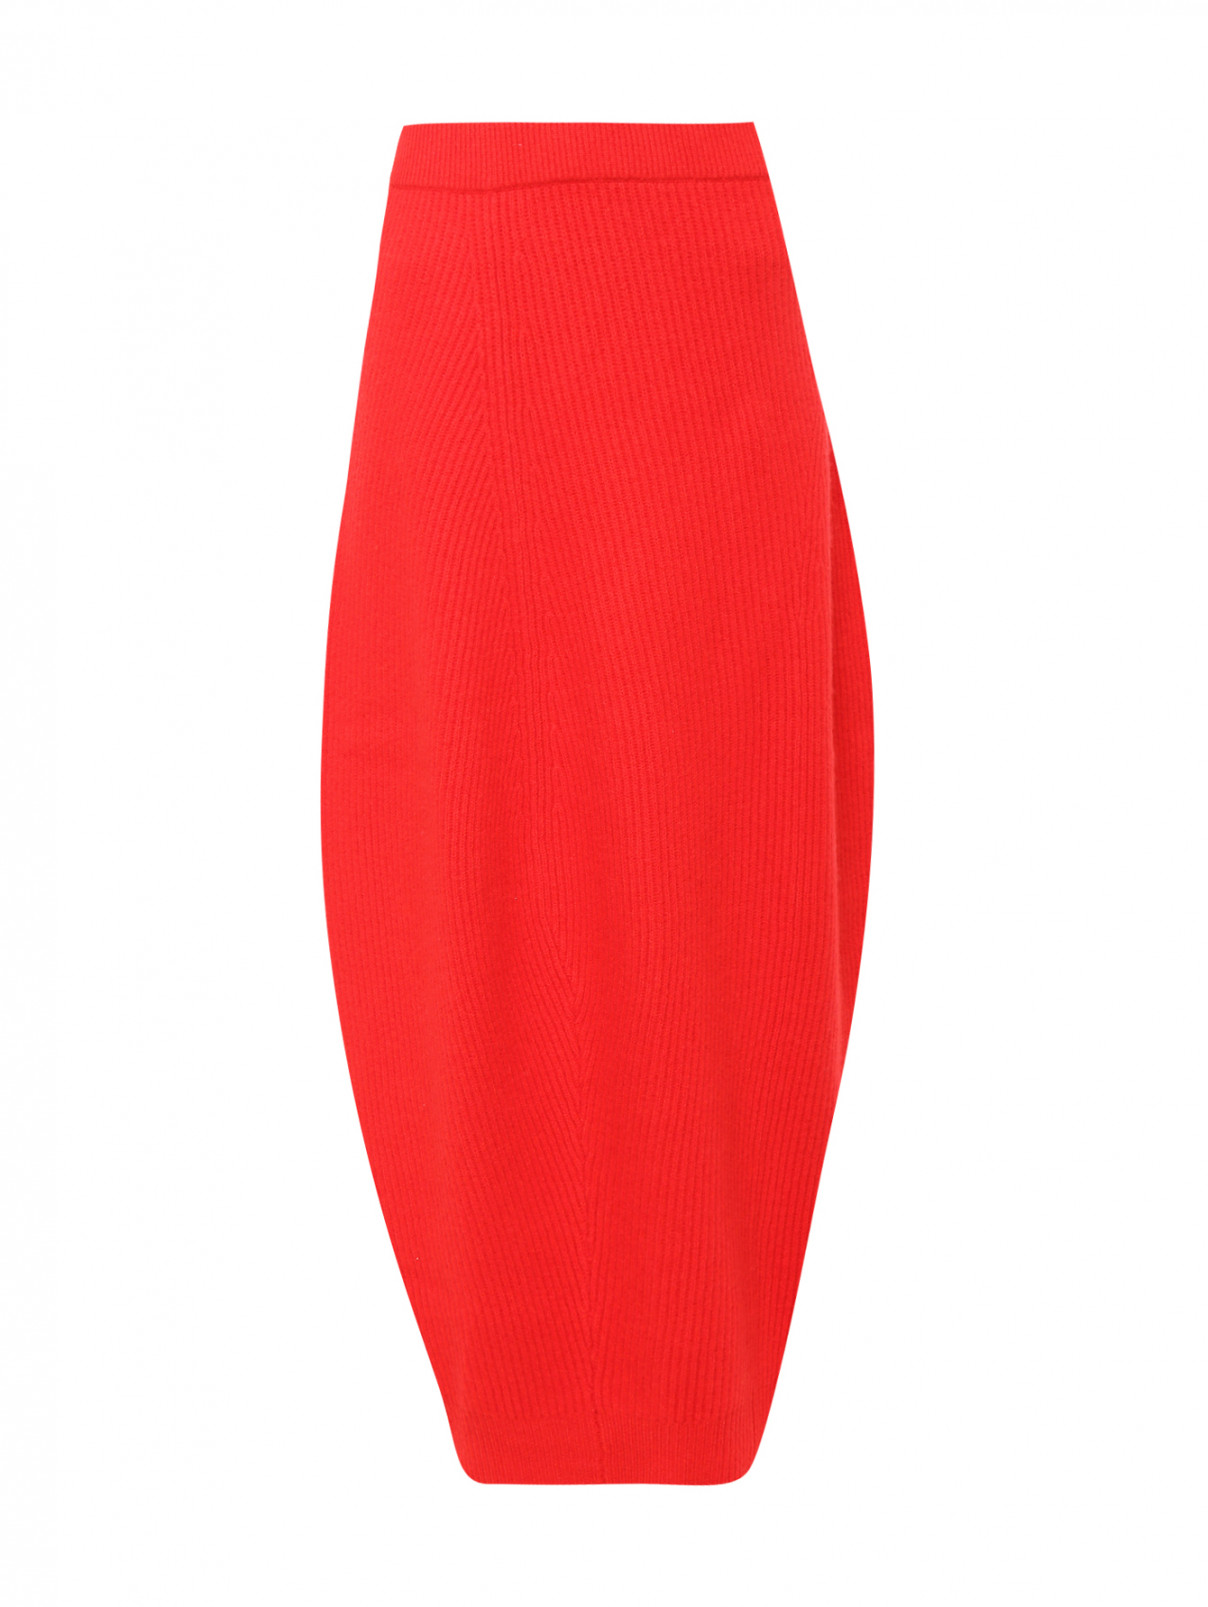 Юбка-баллон трикотажная из шерсти и кашемира Jil Sander  –  Общий вид  – Цвет:  Красный